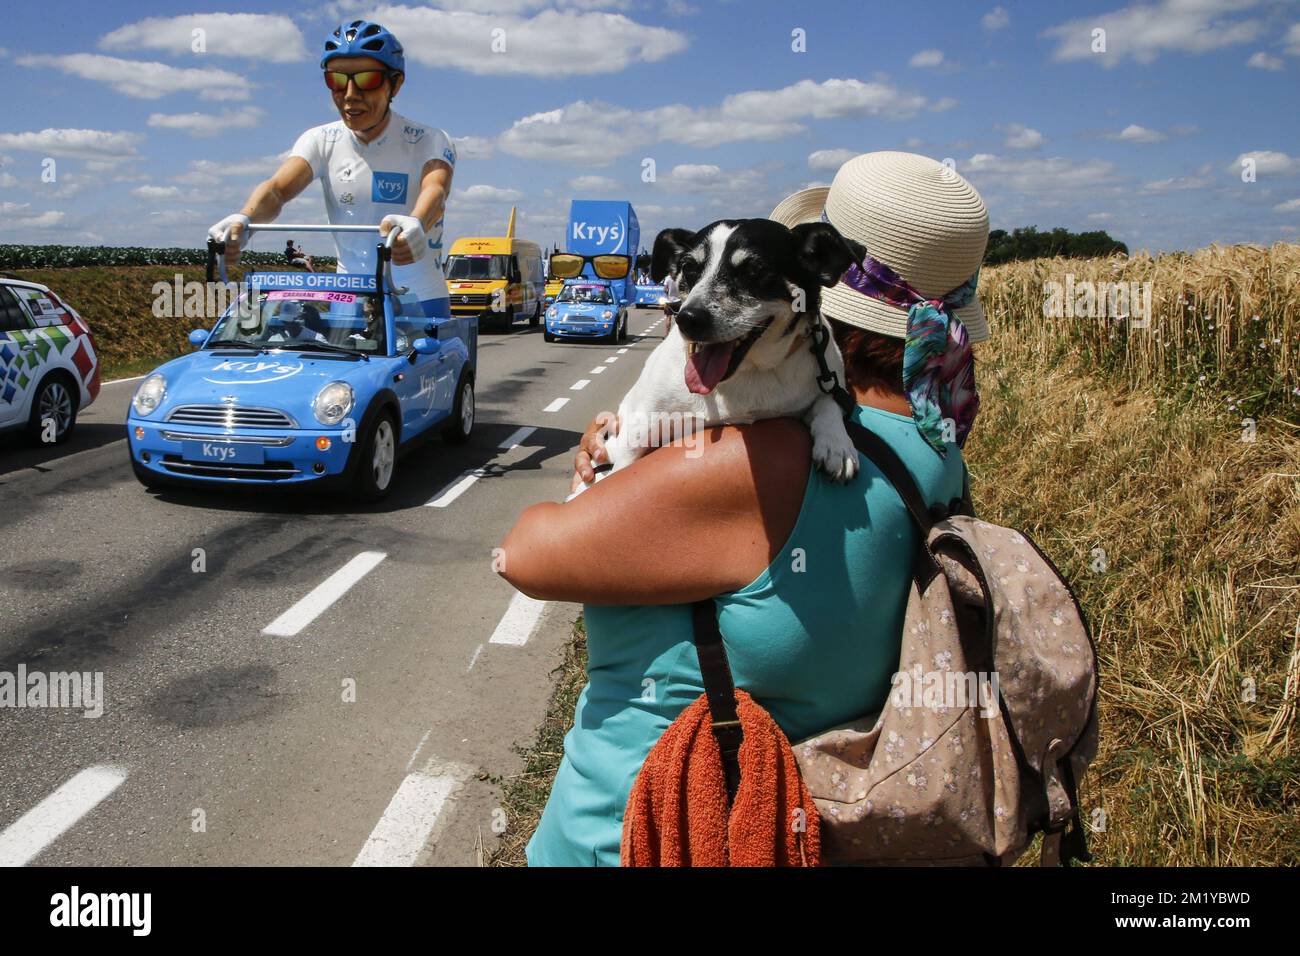 20150706 - TIENEN, BELGIQUE : la caravane publicitaire est photographiée  pendant la phase 3 de l'édition 102nd de la course cycliste Tour de France,  à 159,5 km d'Anvers à Huy, le lundi